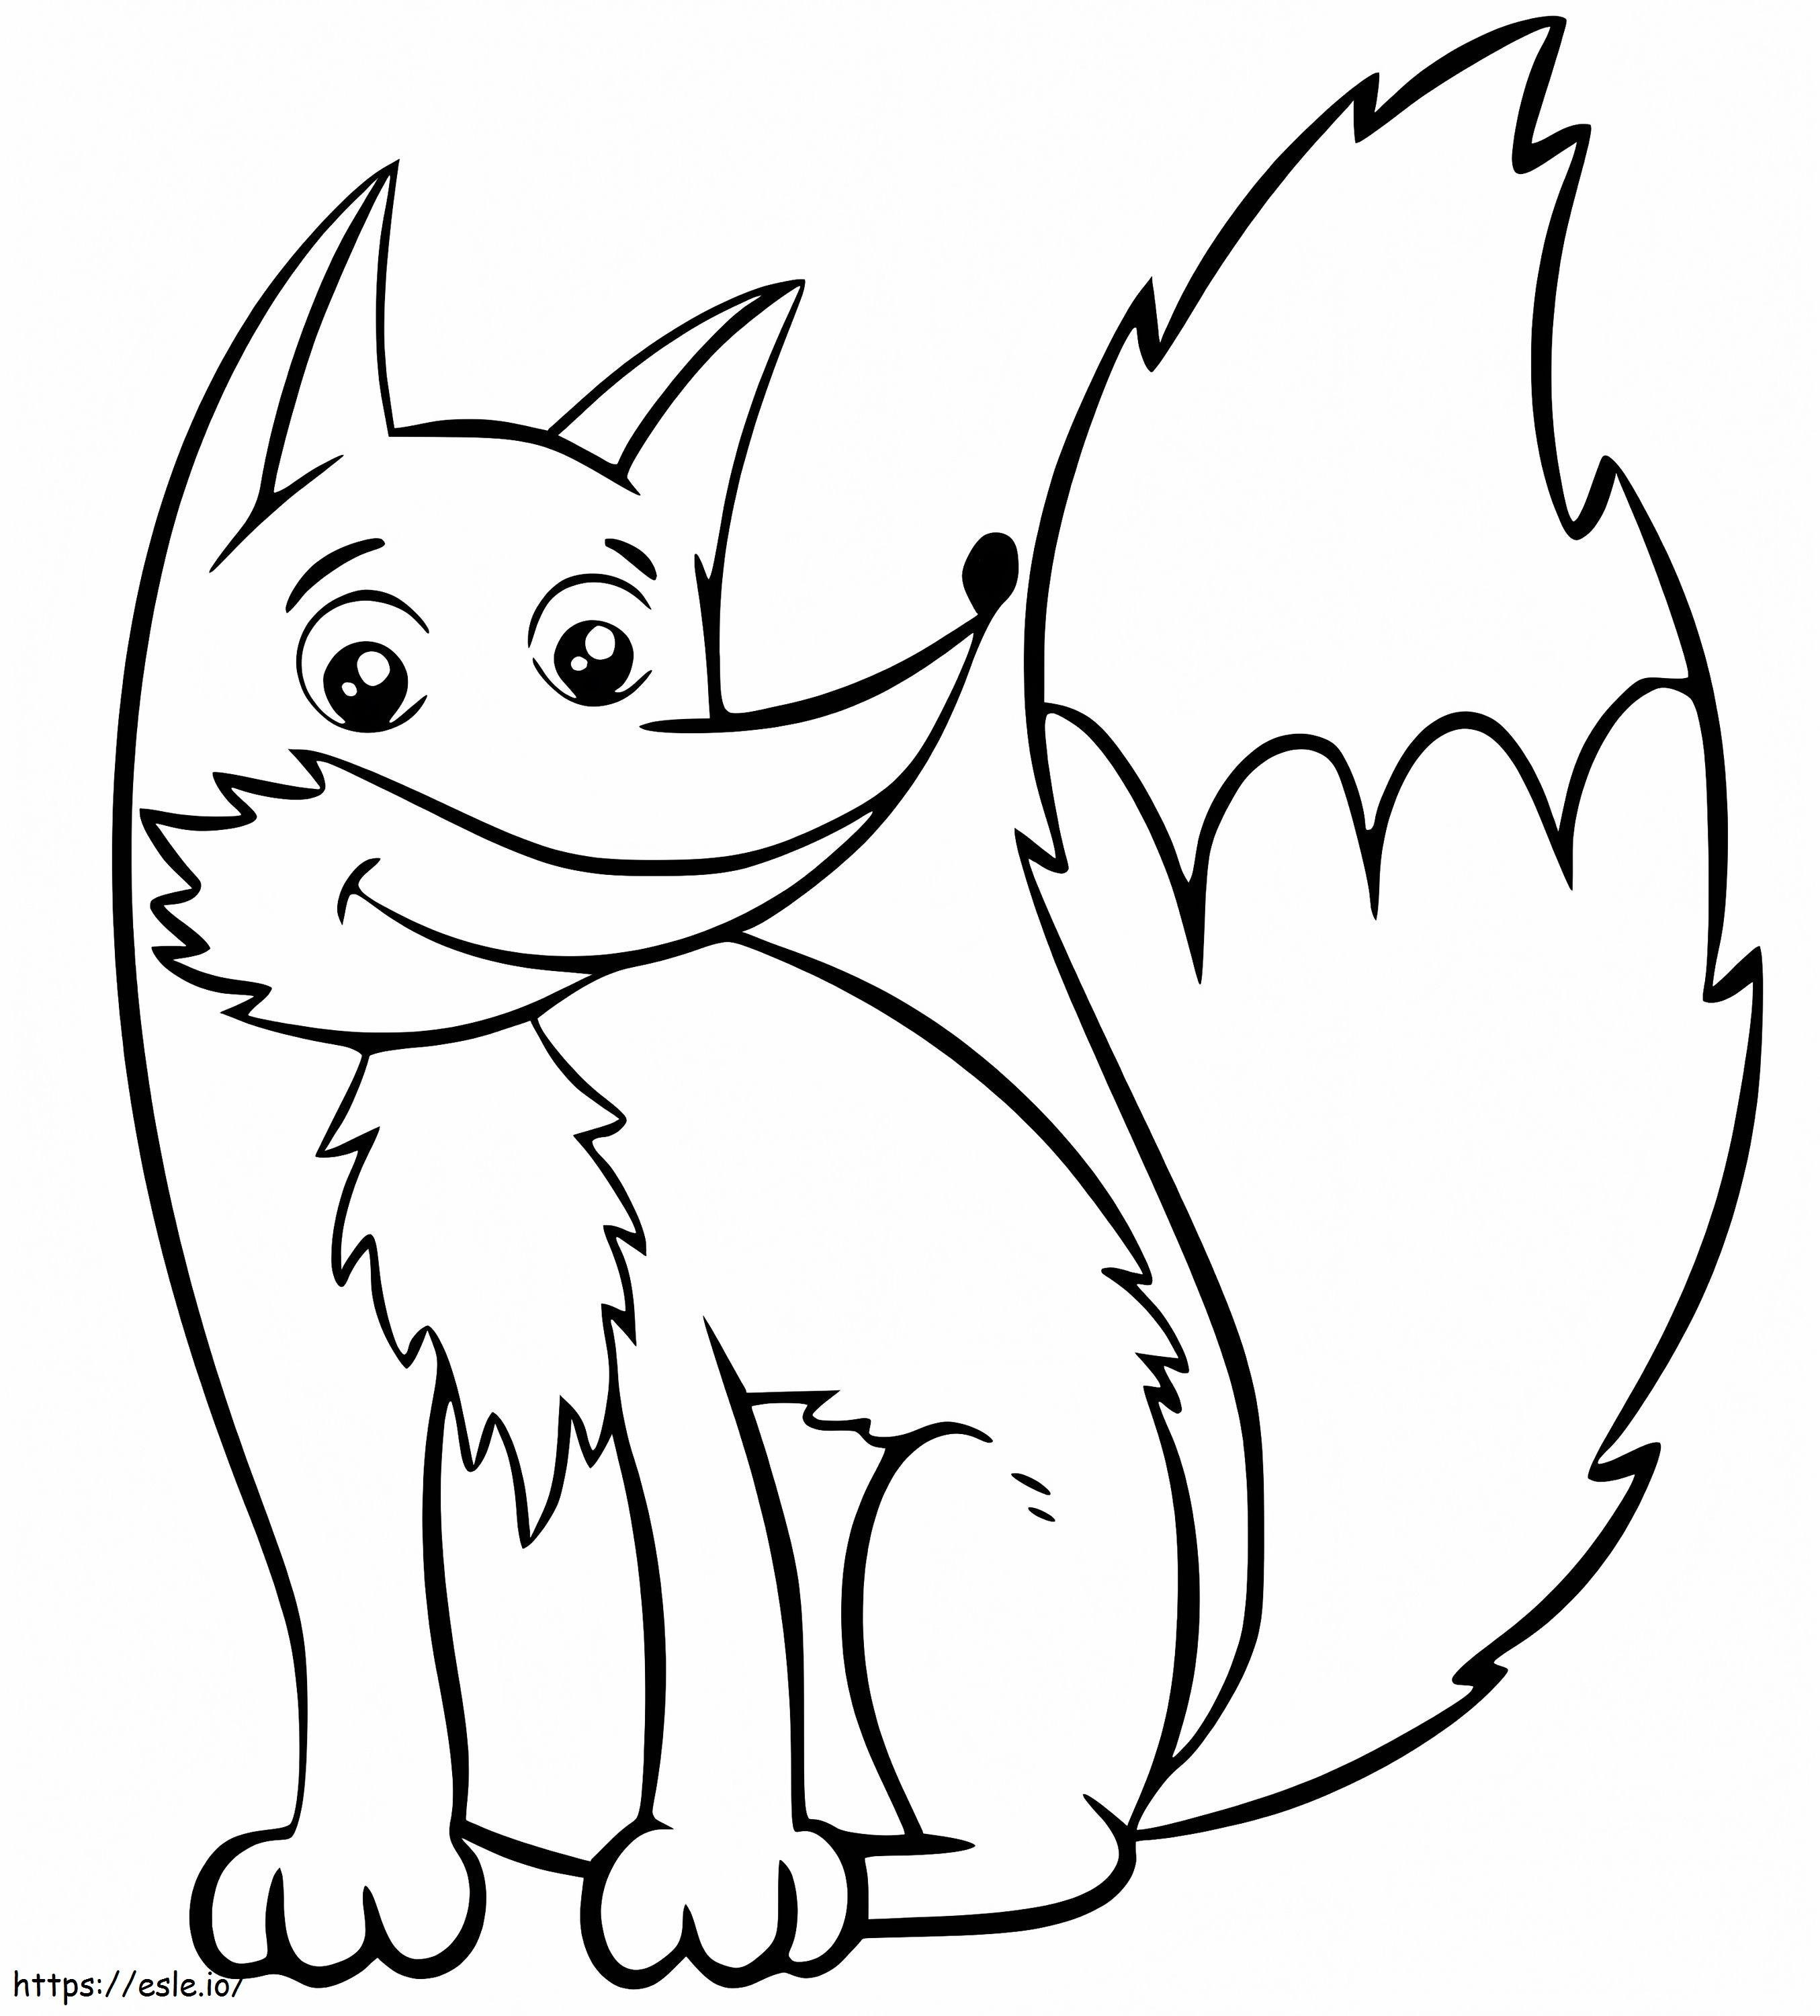 Happy Fox coloring page